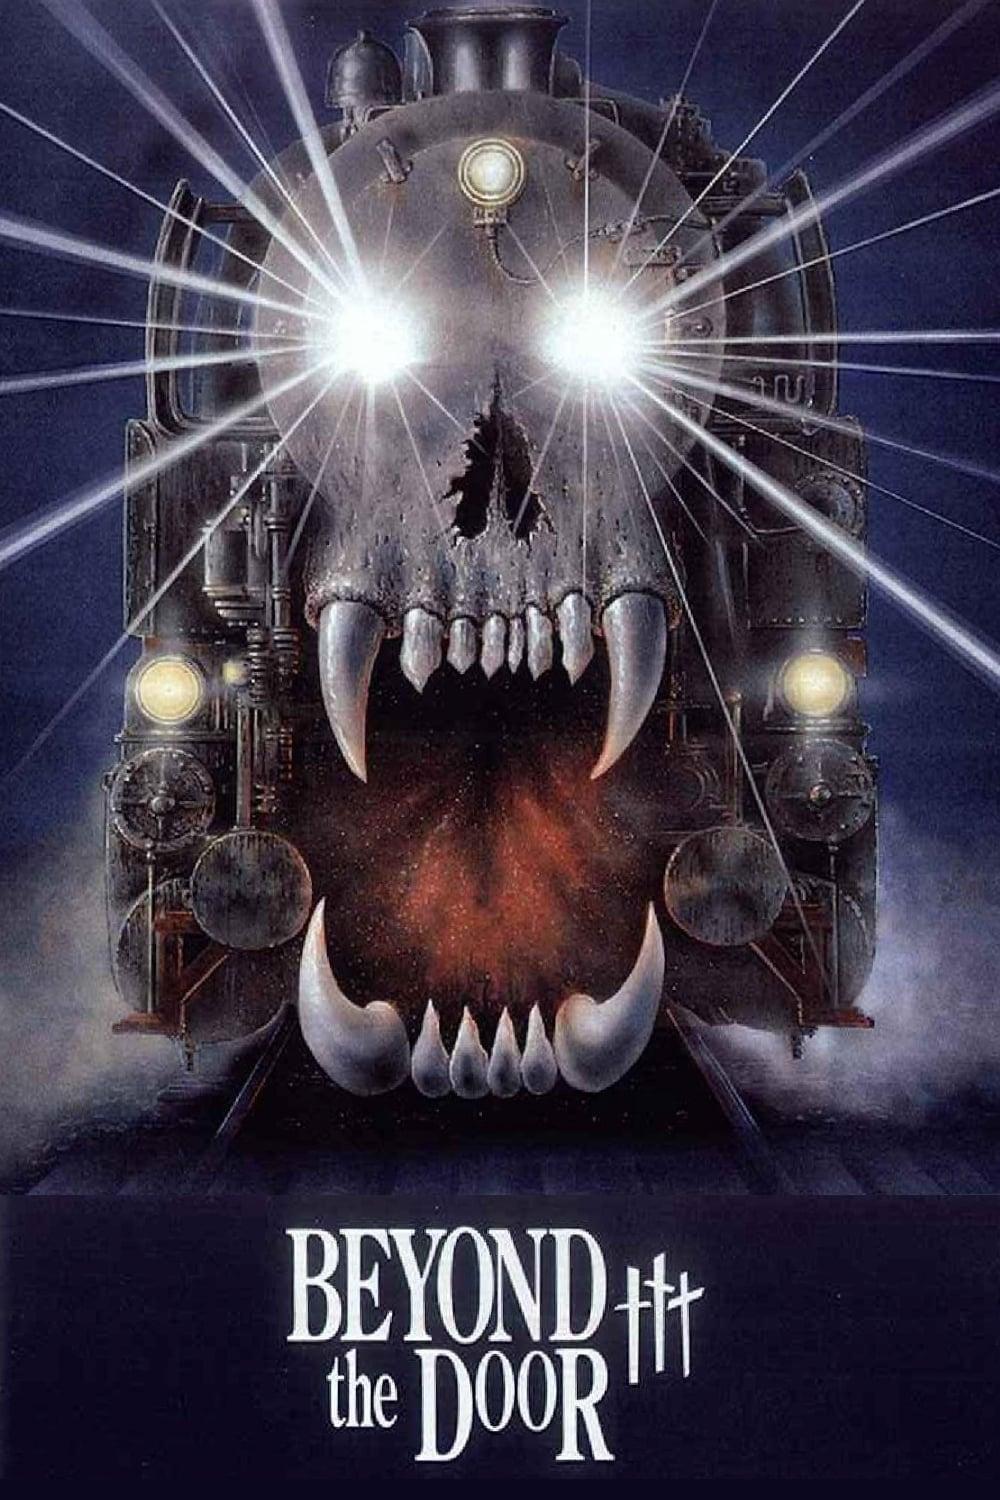 Beyond the Door III poster